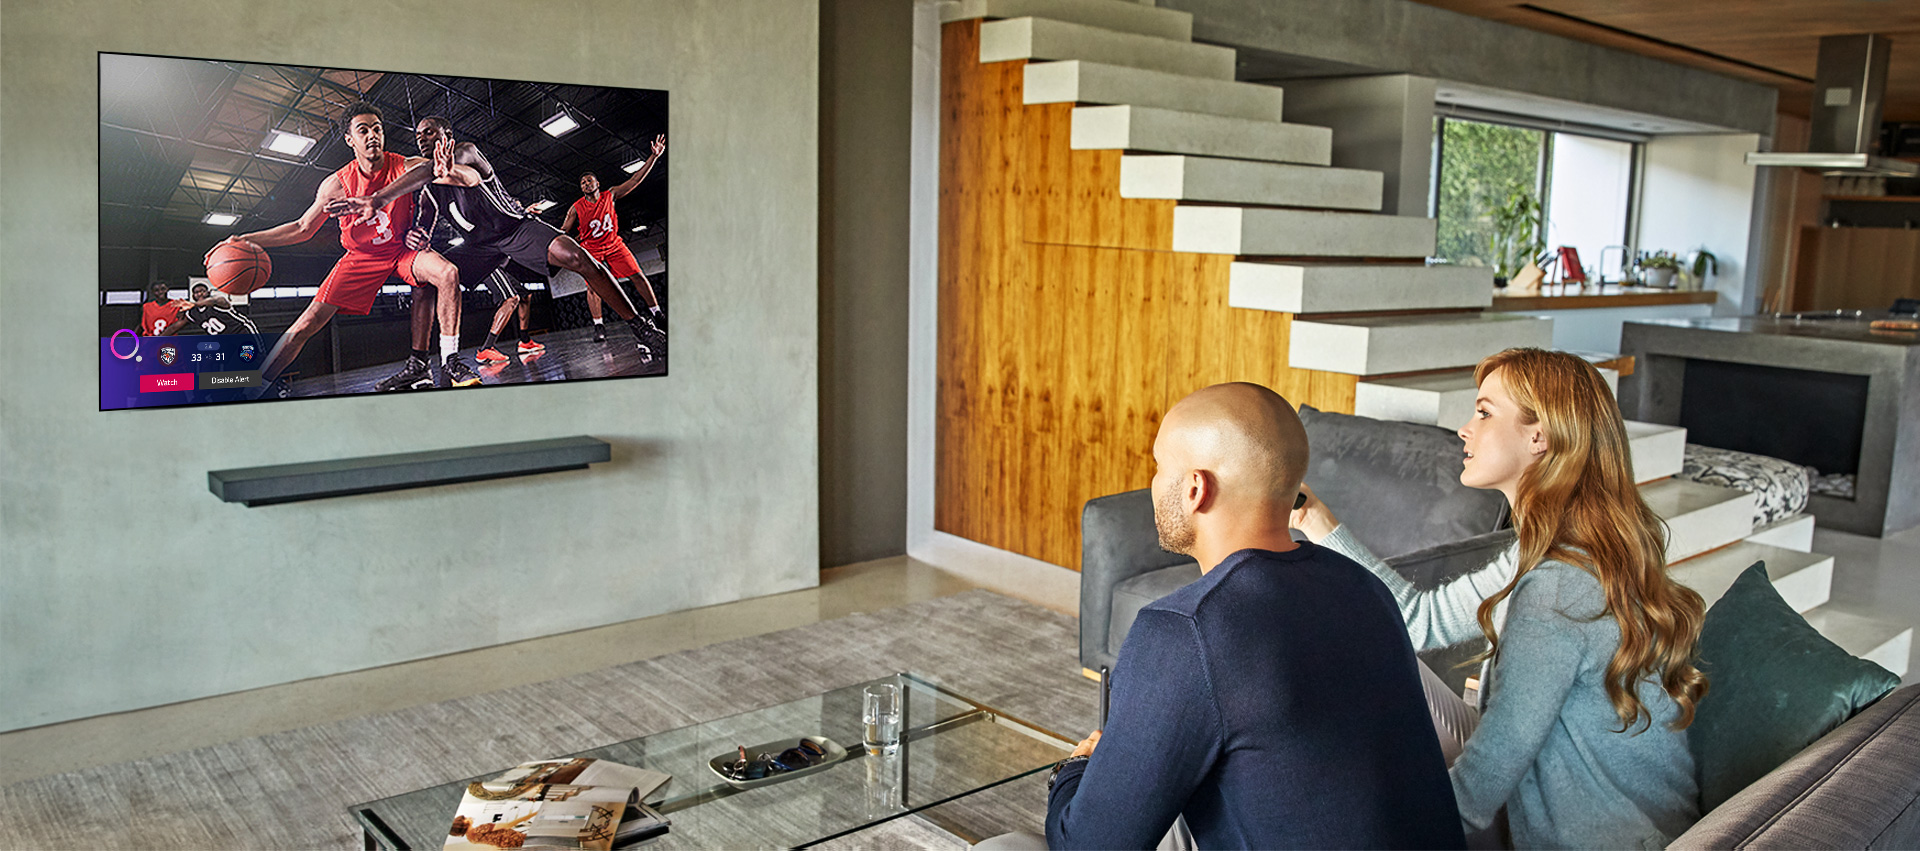 Para oglądająca mecz koszykówki, a w lewym dolnym rogu ekranu wyświetlony jest alarm informujący o wynikach innych meczów